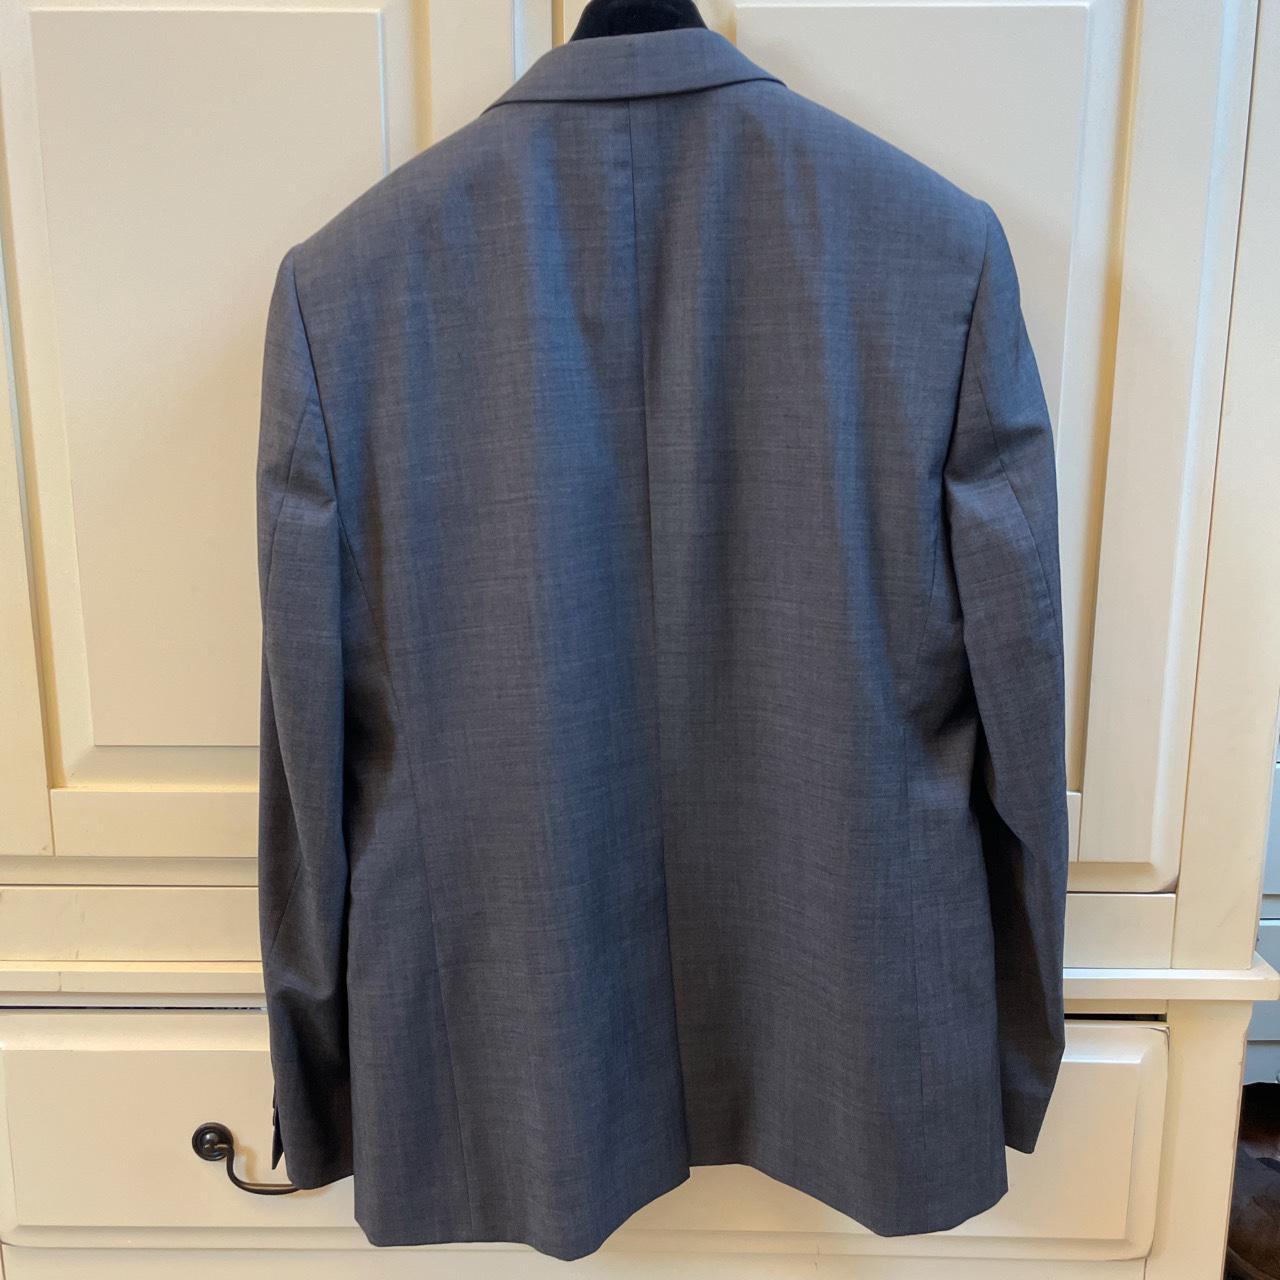 Ted Baker Endurance Grey Suit Jacket in excellent... - Depop